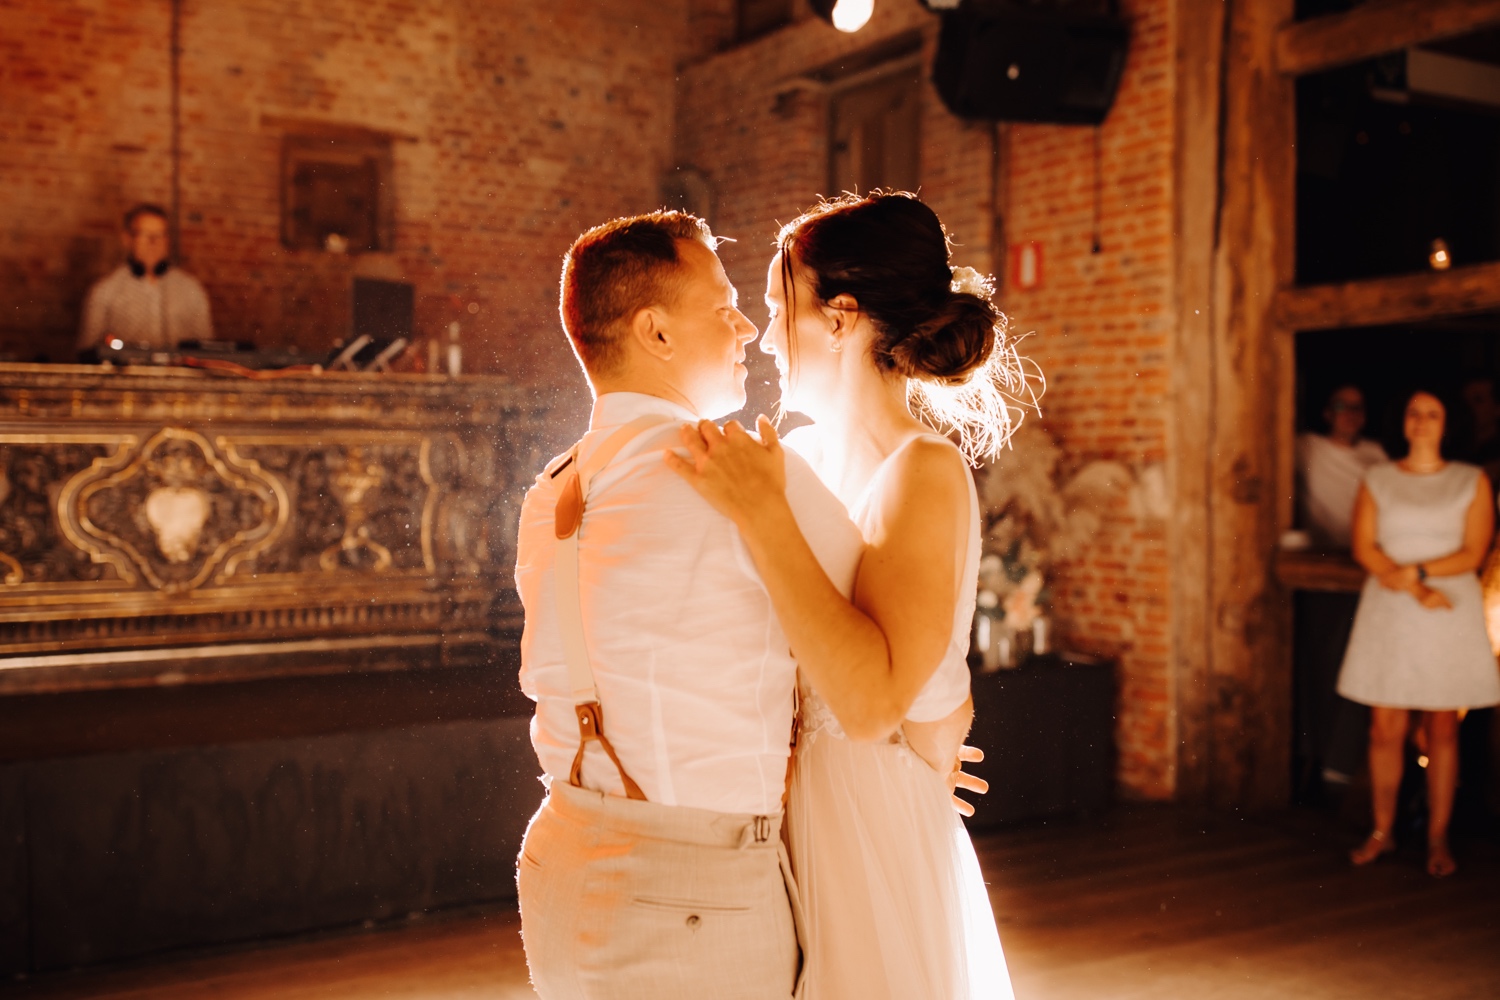 Huwelijksfotograaf Limburg - bruidspaar kijkt elkaar in de ogen tijdens openingsdans